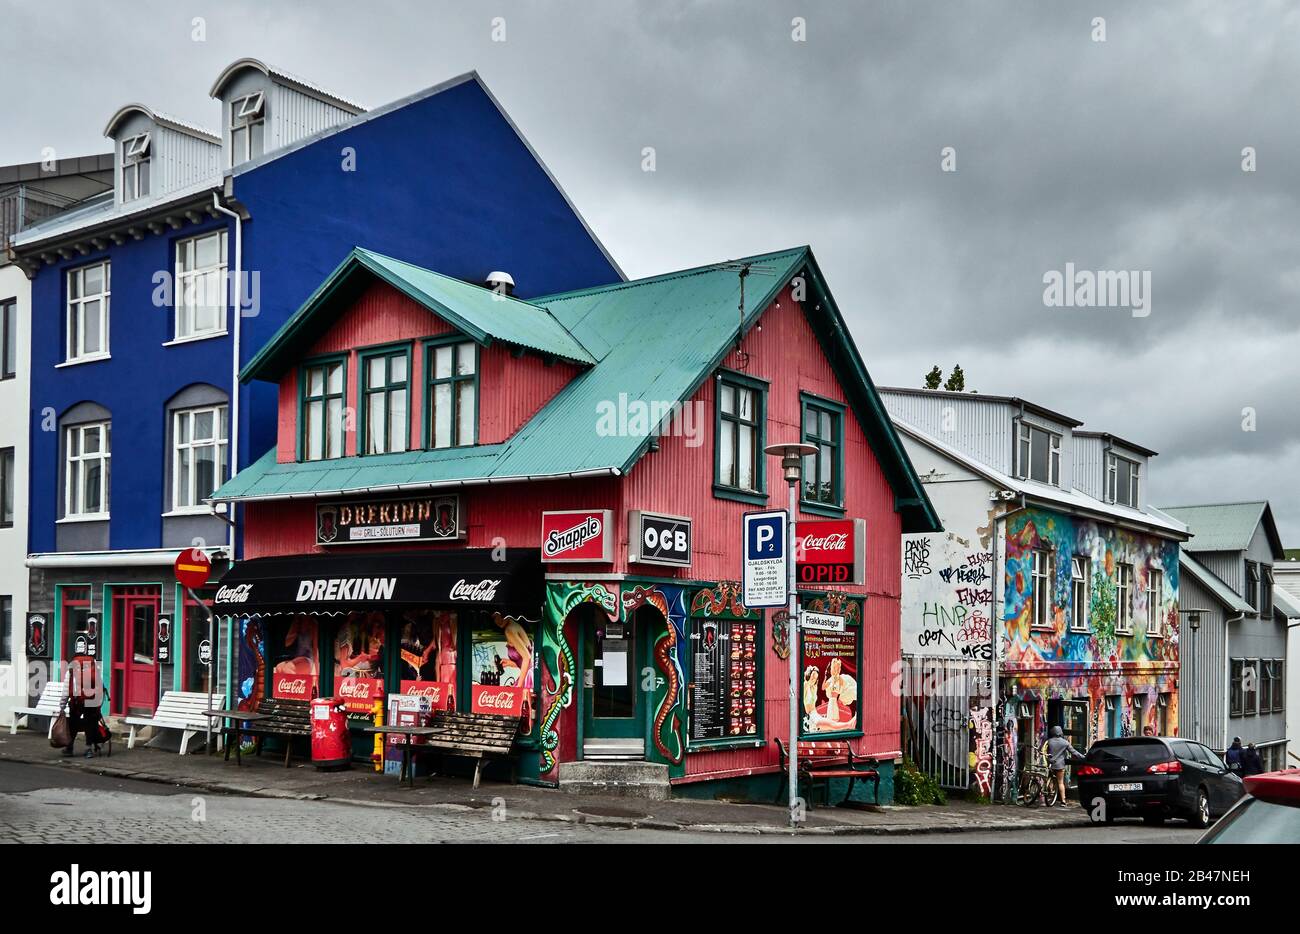 Europa, Frakkastigur Straße, Leute, die an einem regnerischen Tag im Sommer in der Altstadt von Reykjavik, Island, entlang von Geschäften und Restaurants laufen. Stockfoto